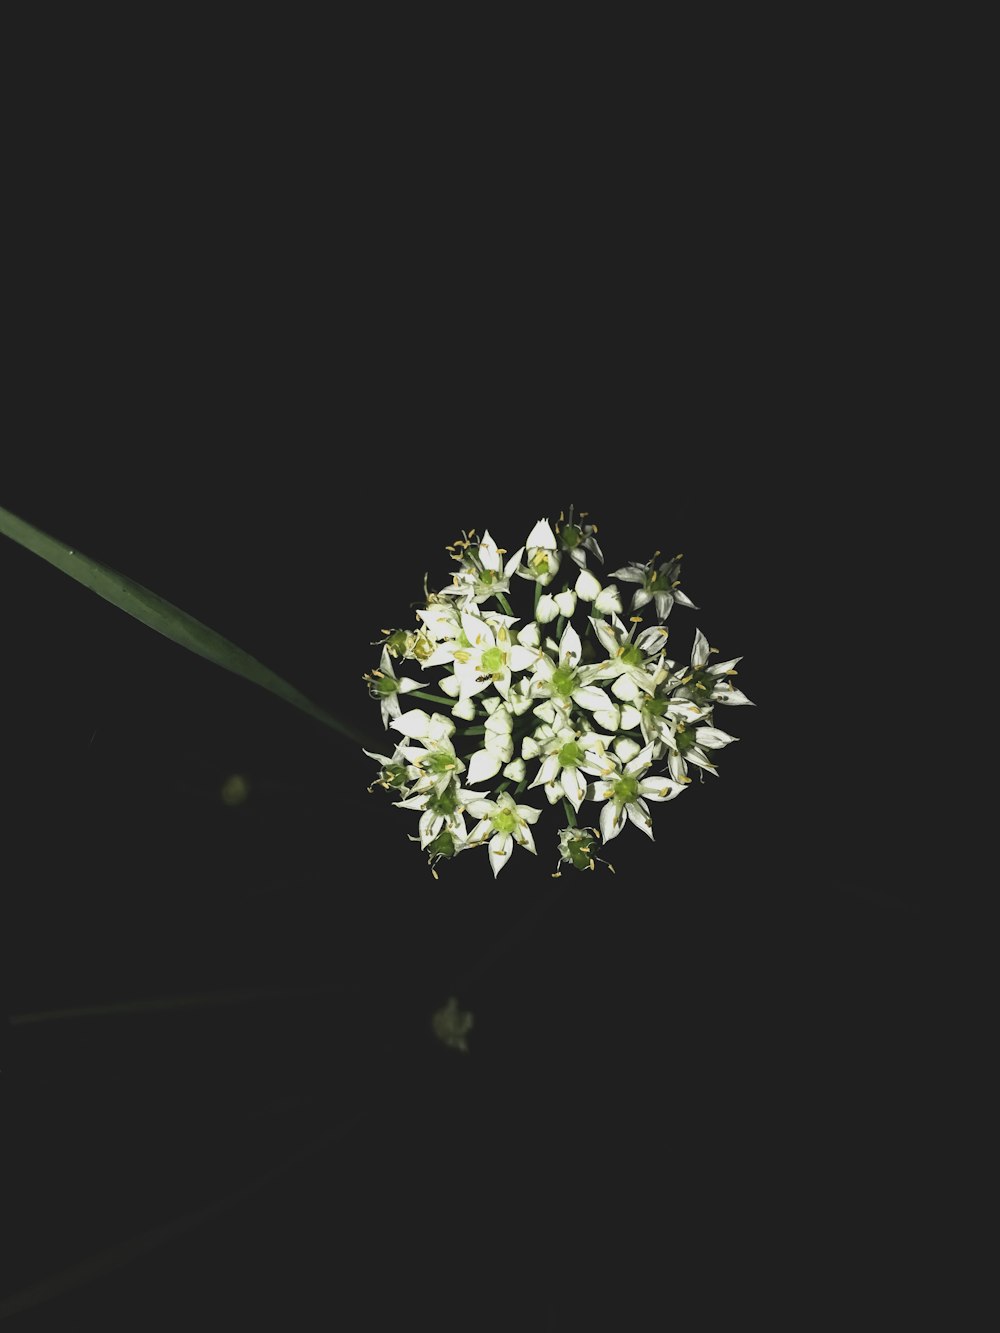 fiore bianco e verde su sfondo nero